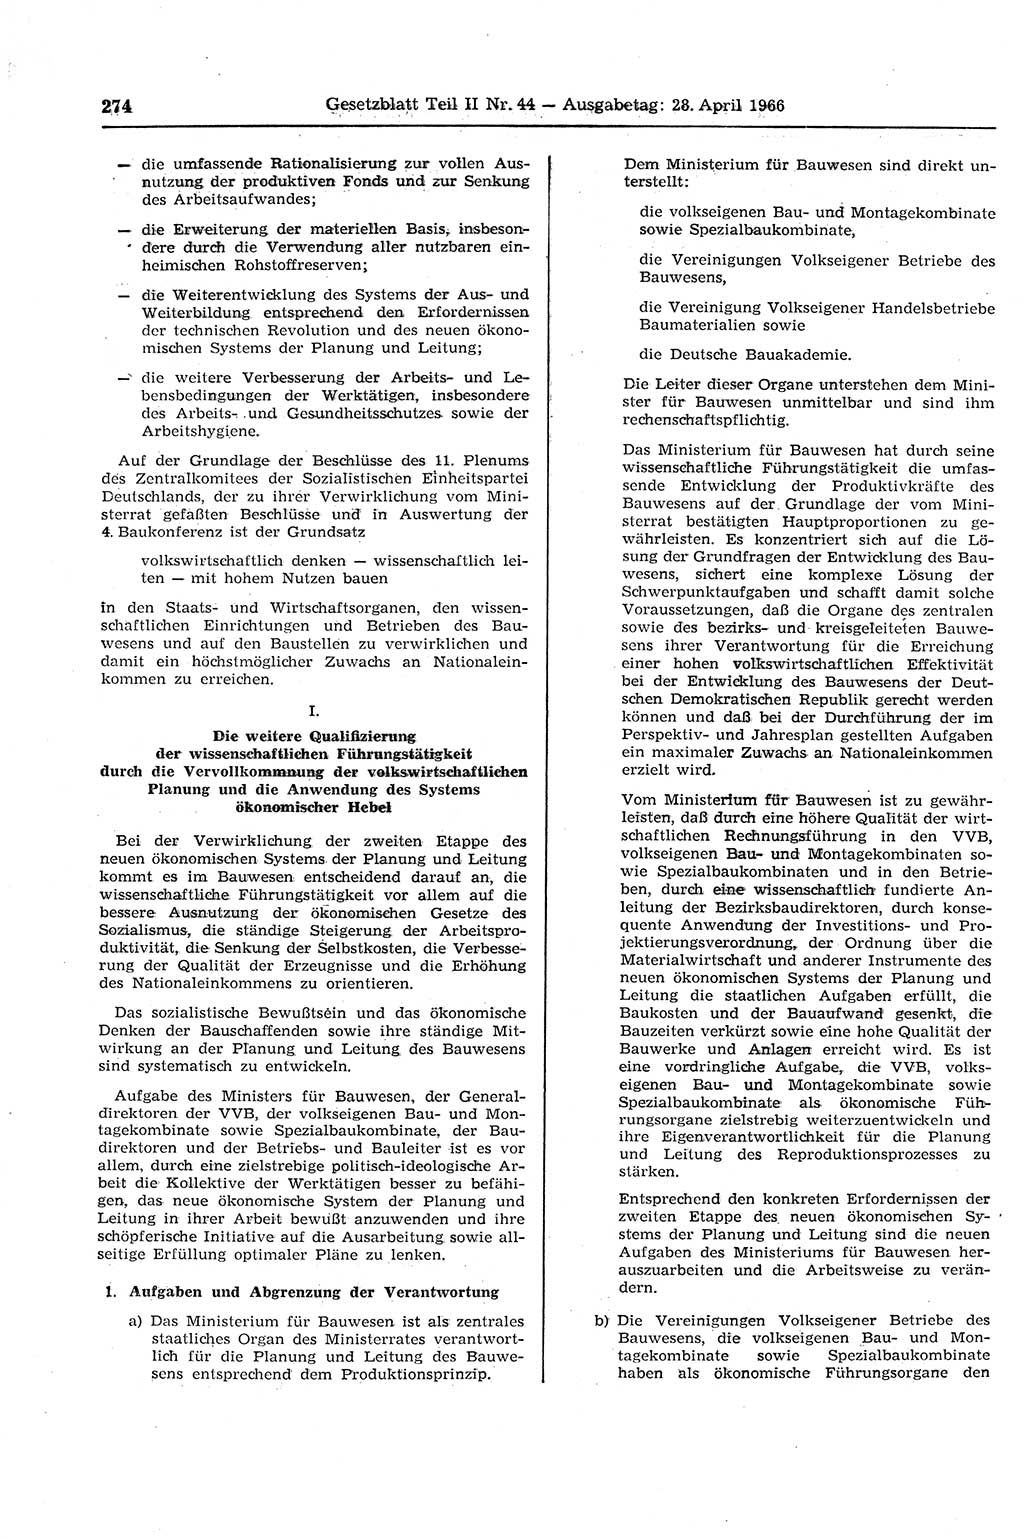 Gesetzblatt (GBl.) der Deutschen Demokratischen Republik (DDR) Teil ⅠⅠ 1966, Seite 274 (GBl. DDR ⅠⅠ 1966, S. 274)